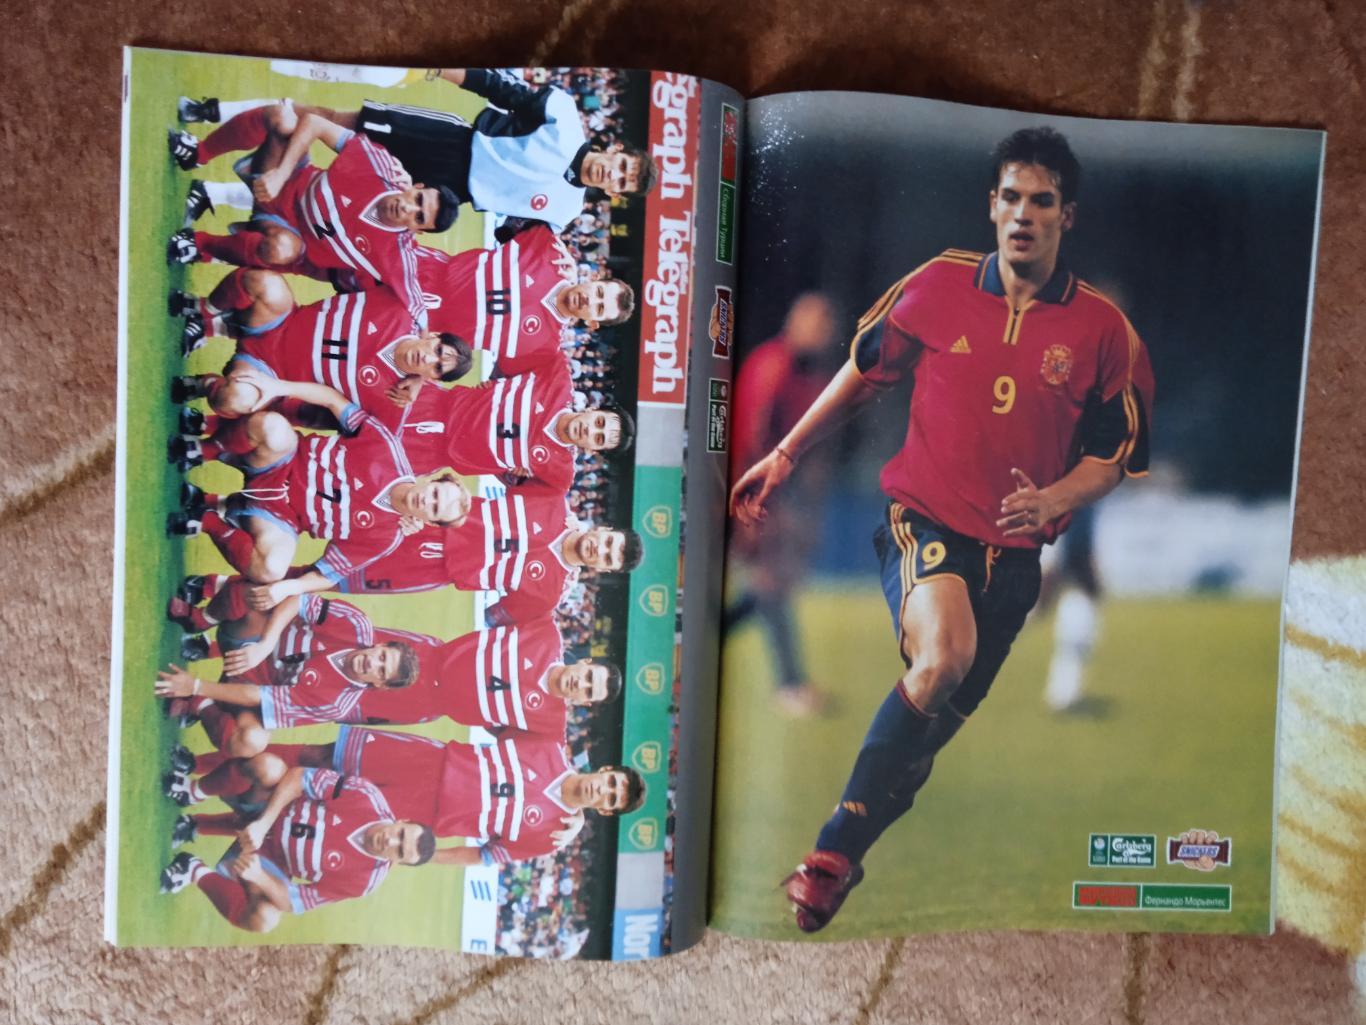 Журнал.Мировой футбол.Май 2000 г. (Постеры). 1